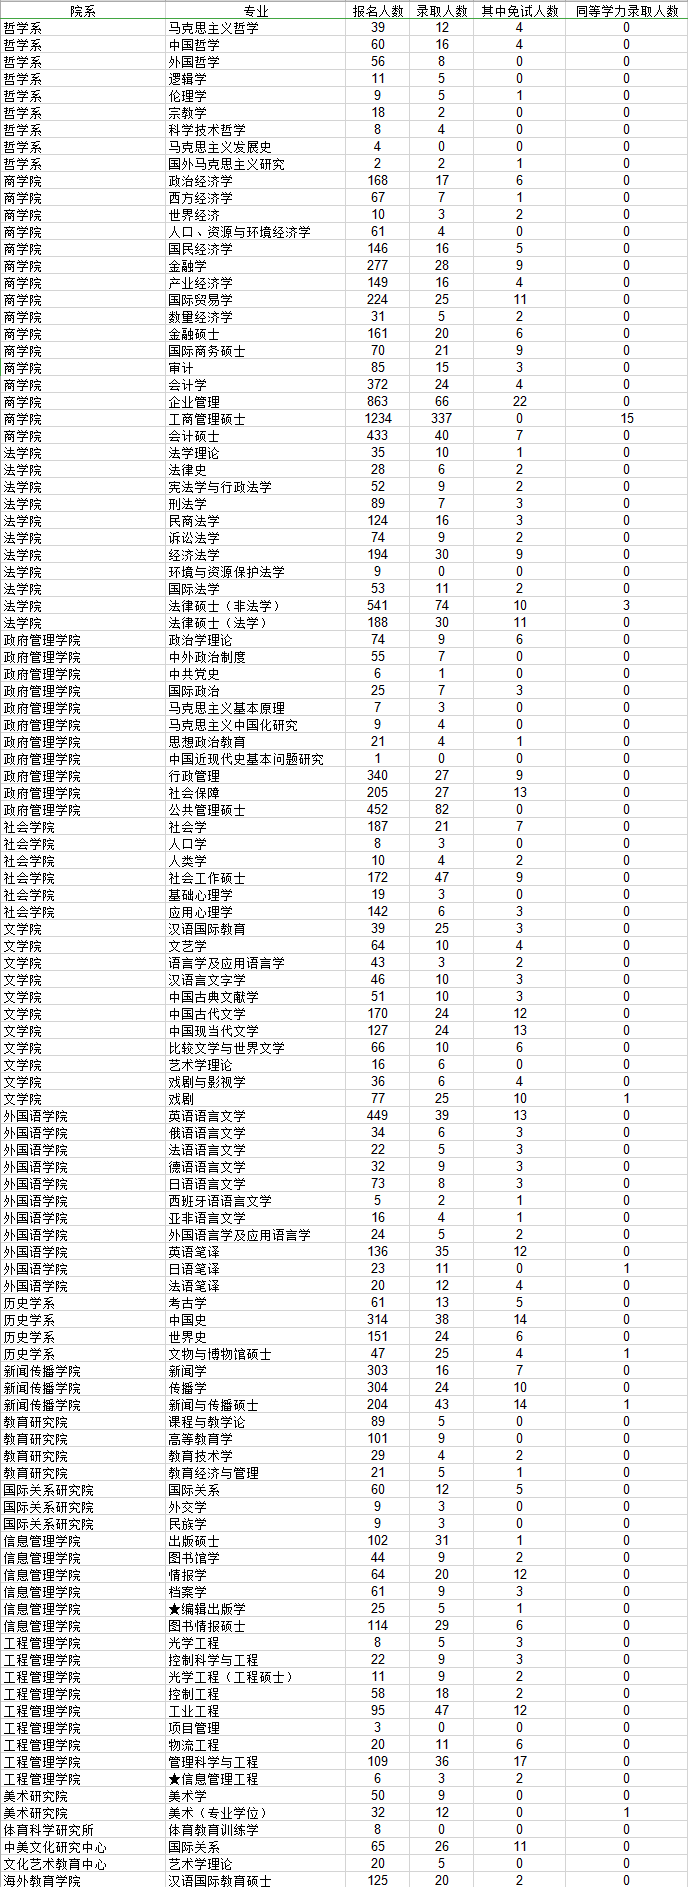 南京大学2013研究生报考录取比例